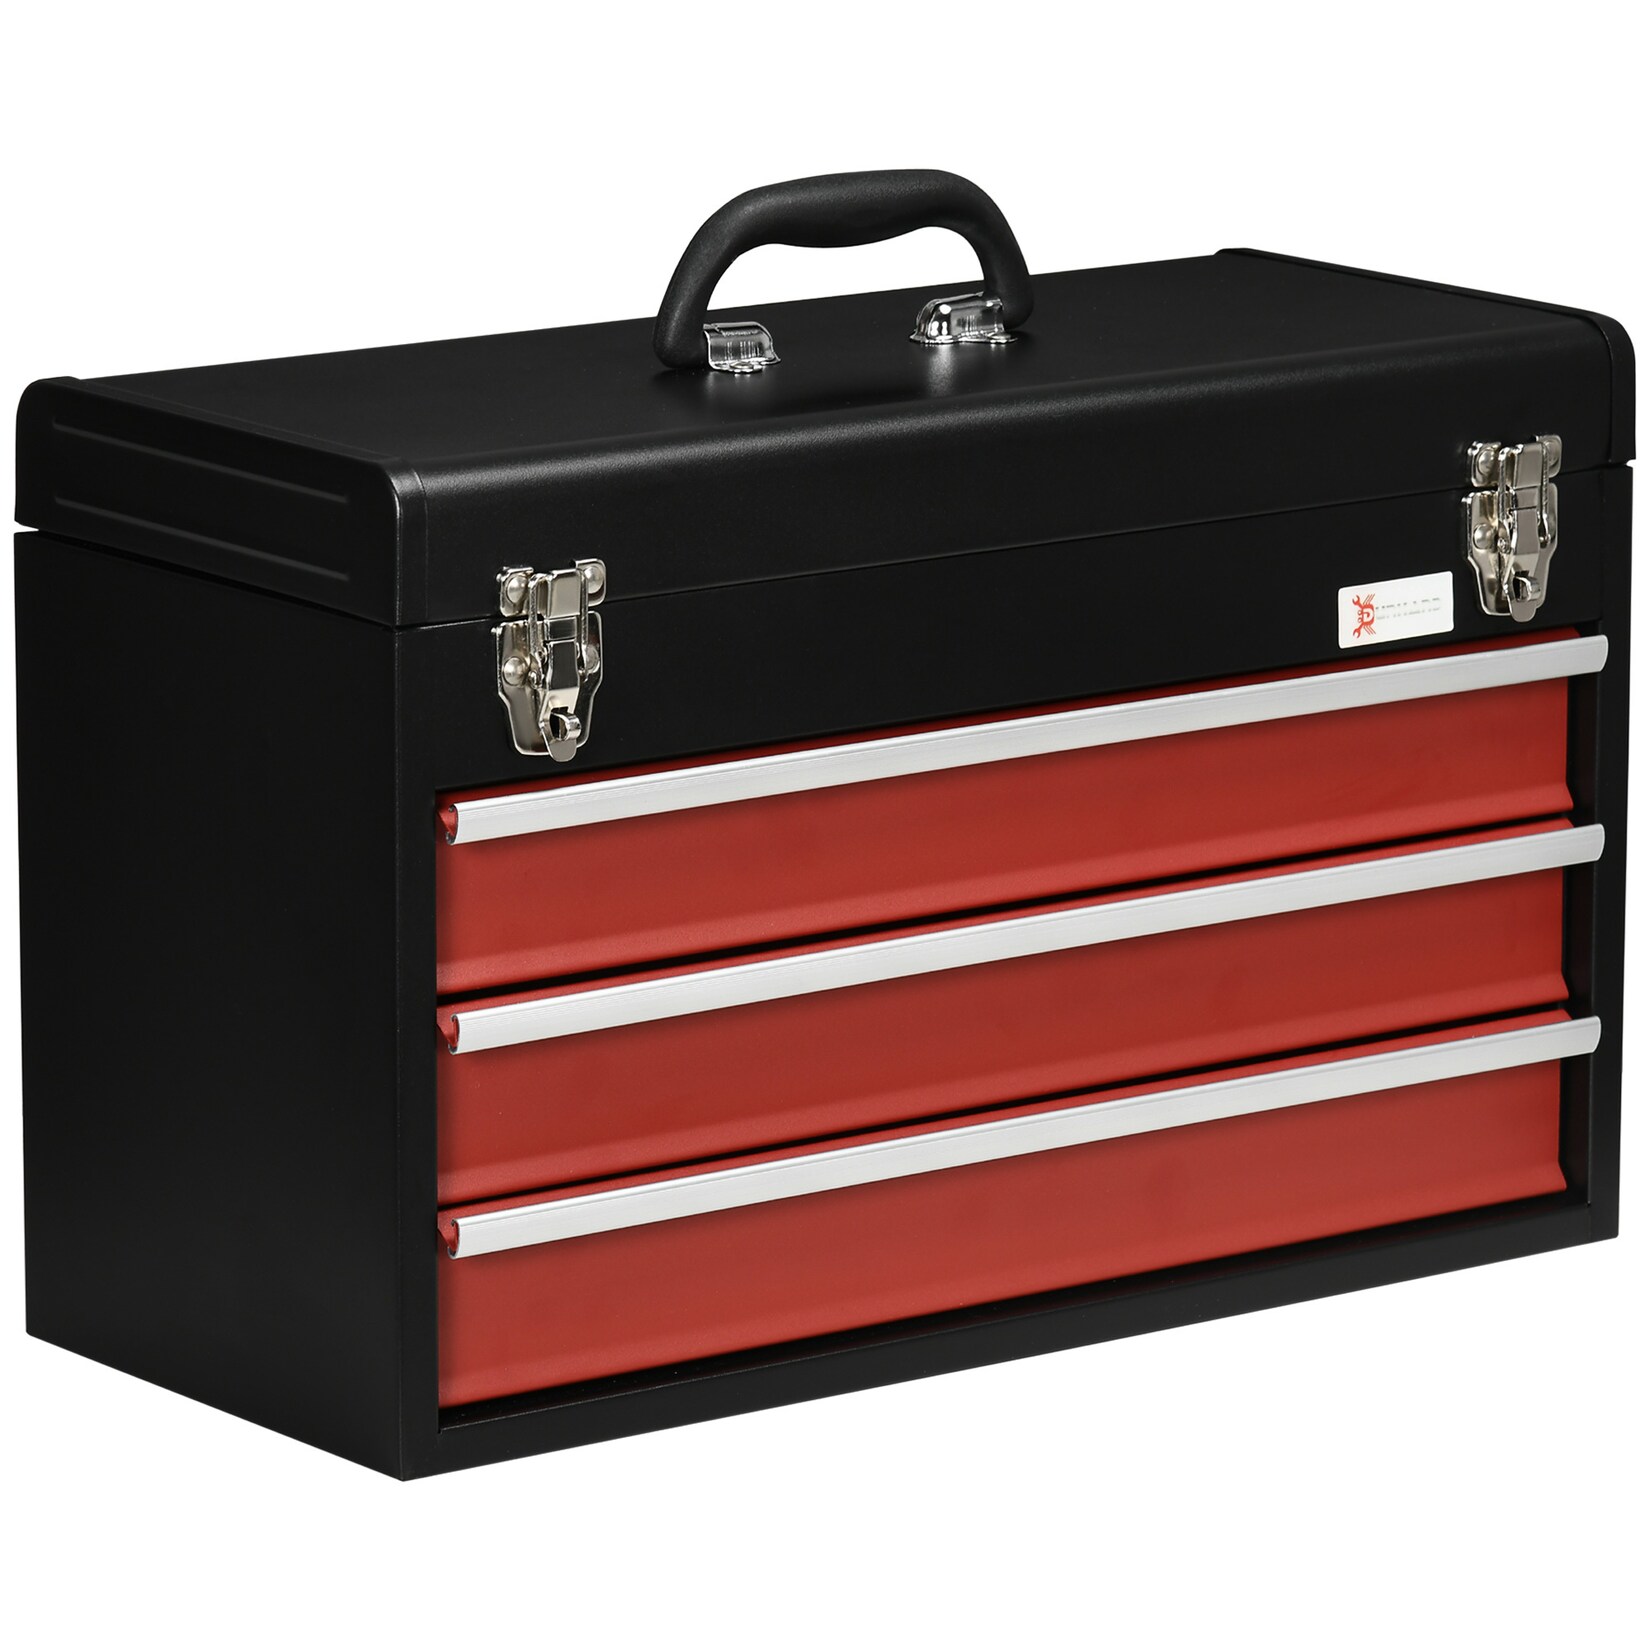 DURHAND Werkzeugkiste mit 3 Schubladen schwarz, rot 51L x 22B x 32H cm